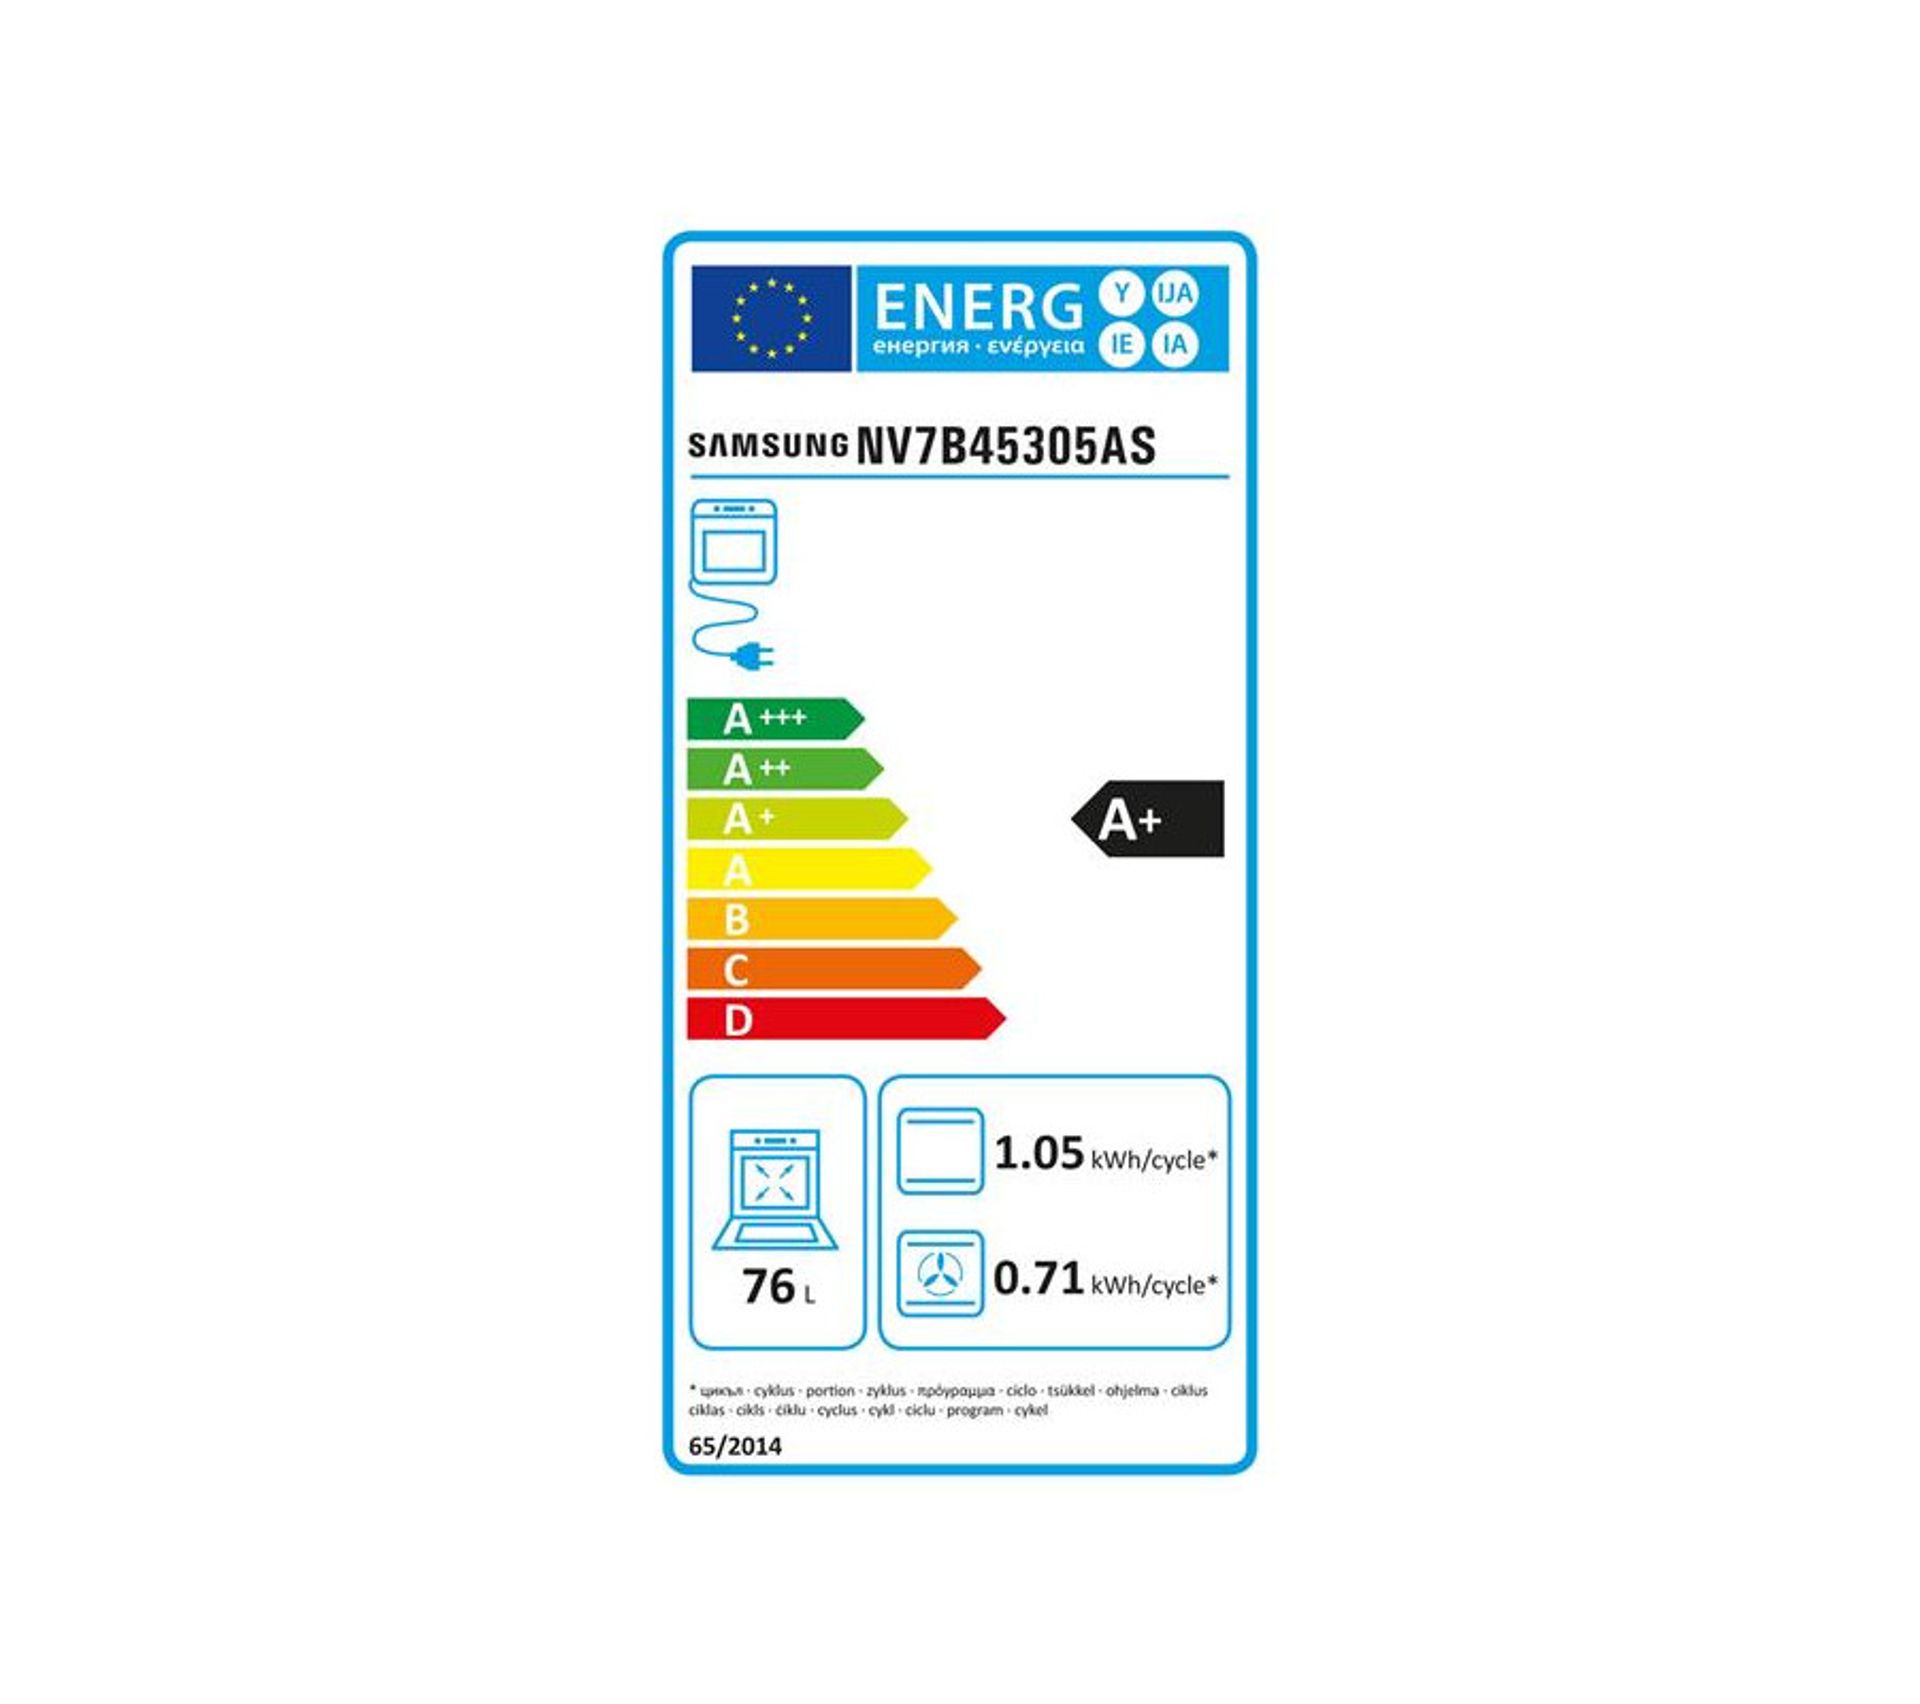 SAMSUNG NV7B45305AS étiquette énergie